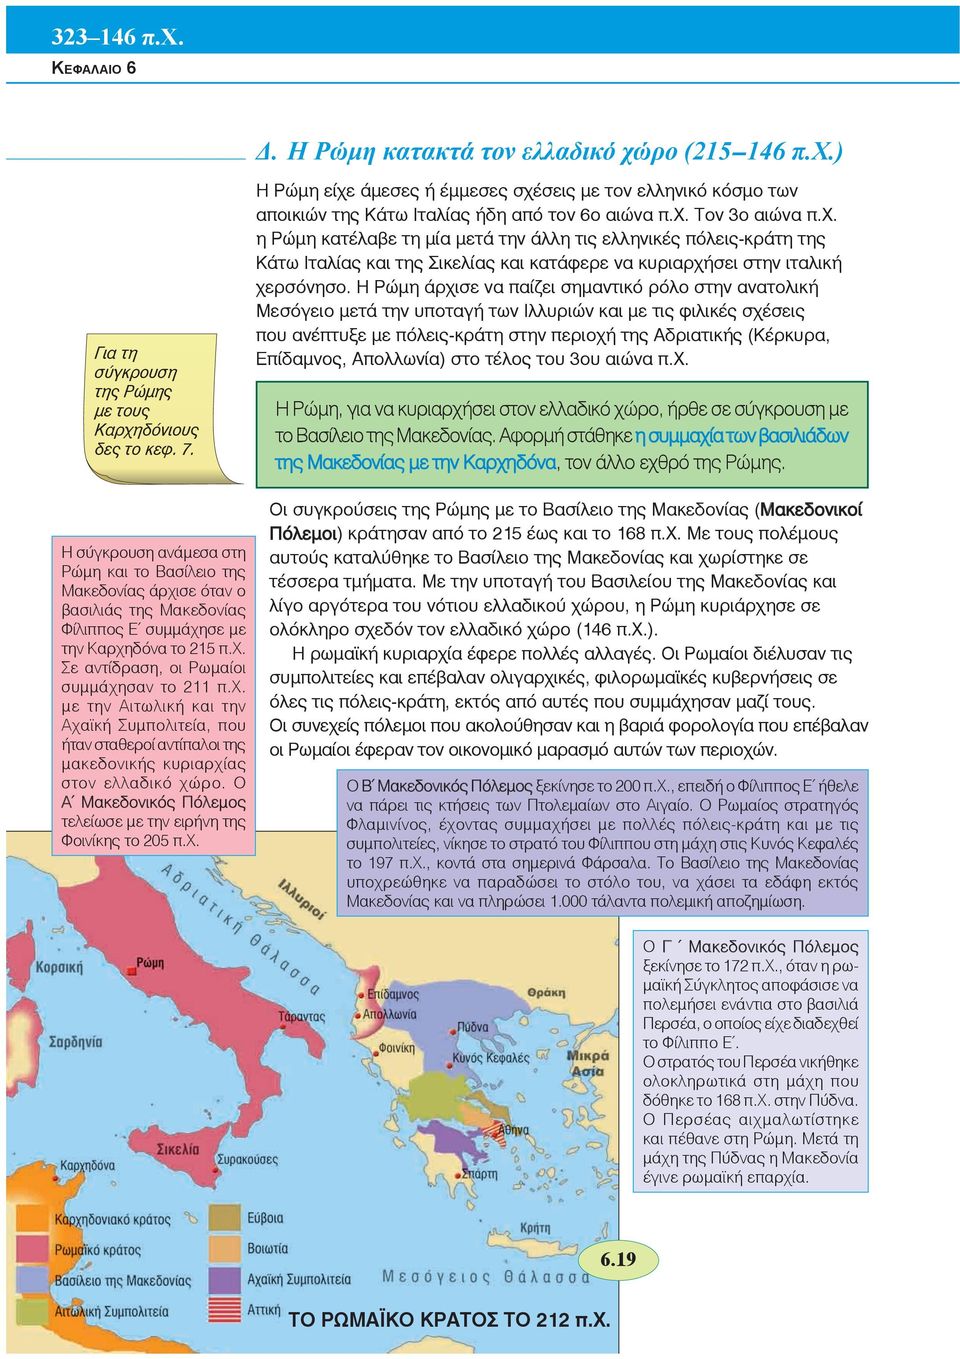 Ο Α Μακεδονικός Πόλεμος τελείωσε με την ειρήνη της Φοινίκης το 205 π.χ. Η Ρώμη είχε άμεσες ή έμμεσες σχέσεις με τον ελληνικό κόσμο των αποικιών της Κάτω Ιταλίας ήδη από τον 6ο αιώνα π.χ. Τον 3ο αιώνα π.